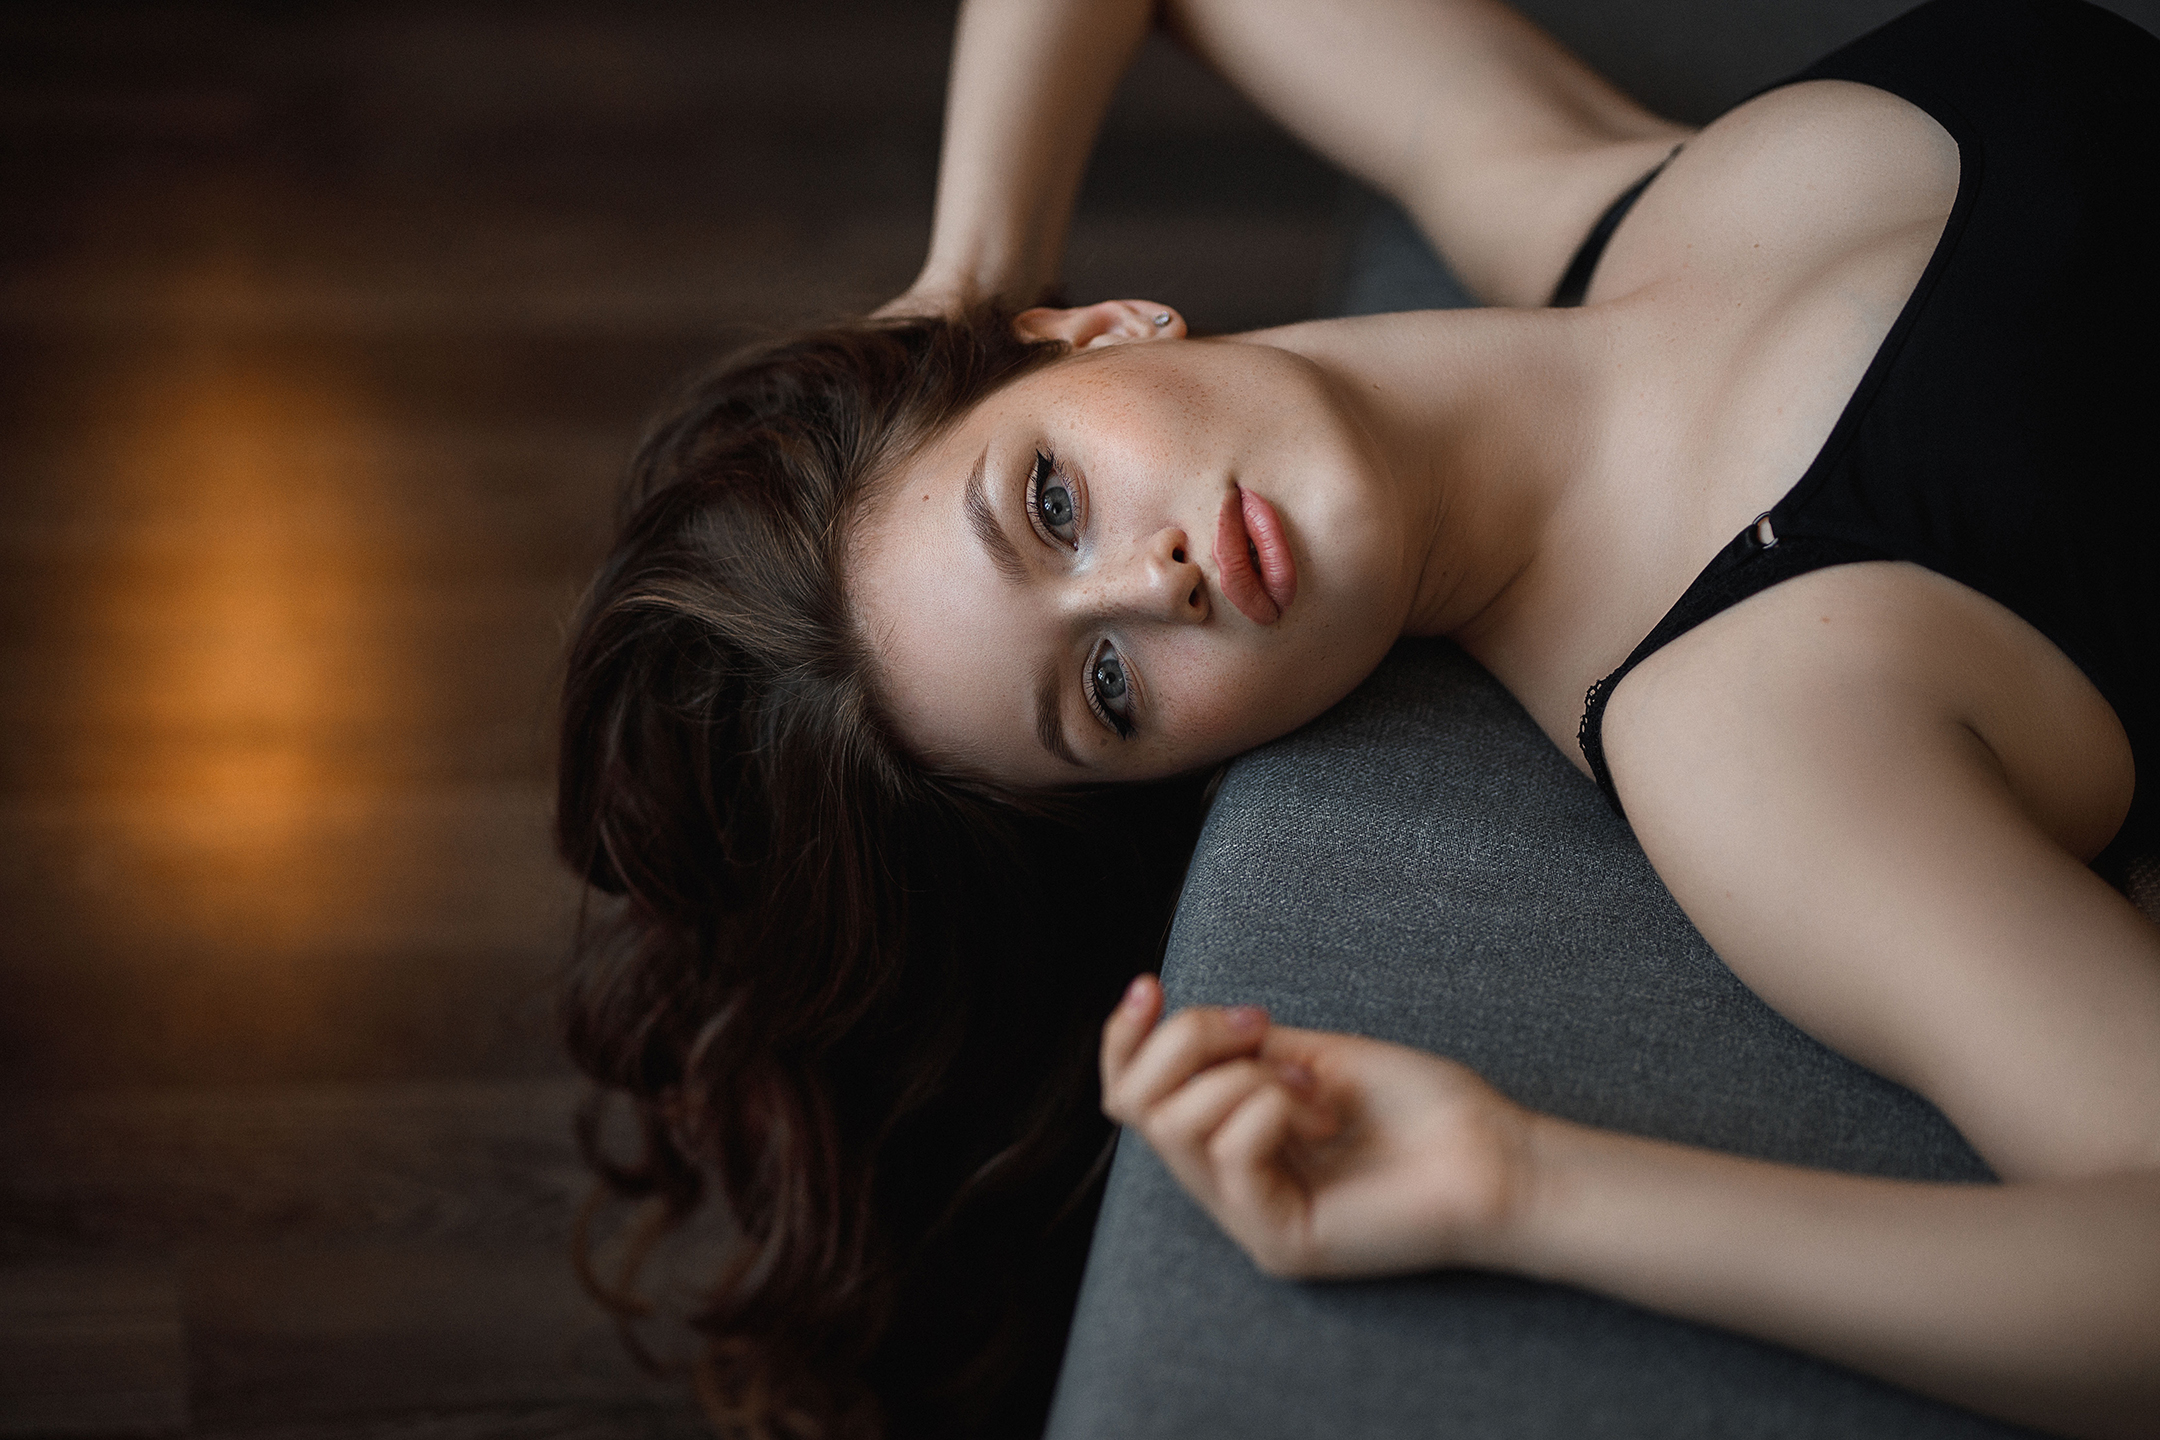 Vladimir Vasilev Women Brunette Makeup Looking At Viewer Black Clothing Lying On Back Indoors 2160x1440